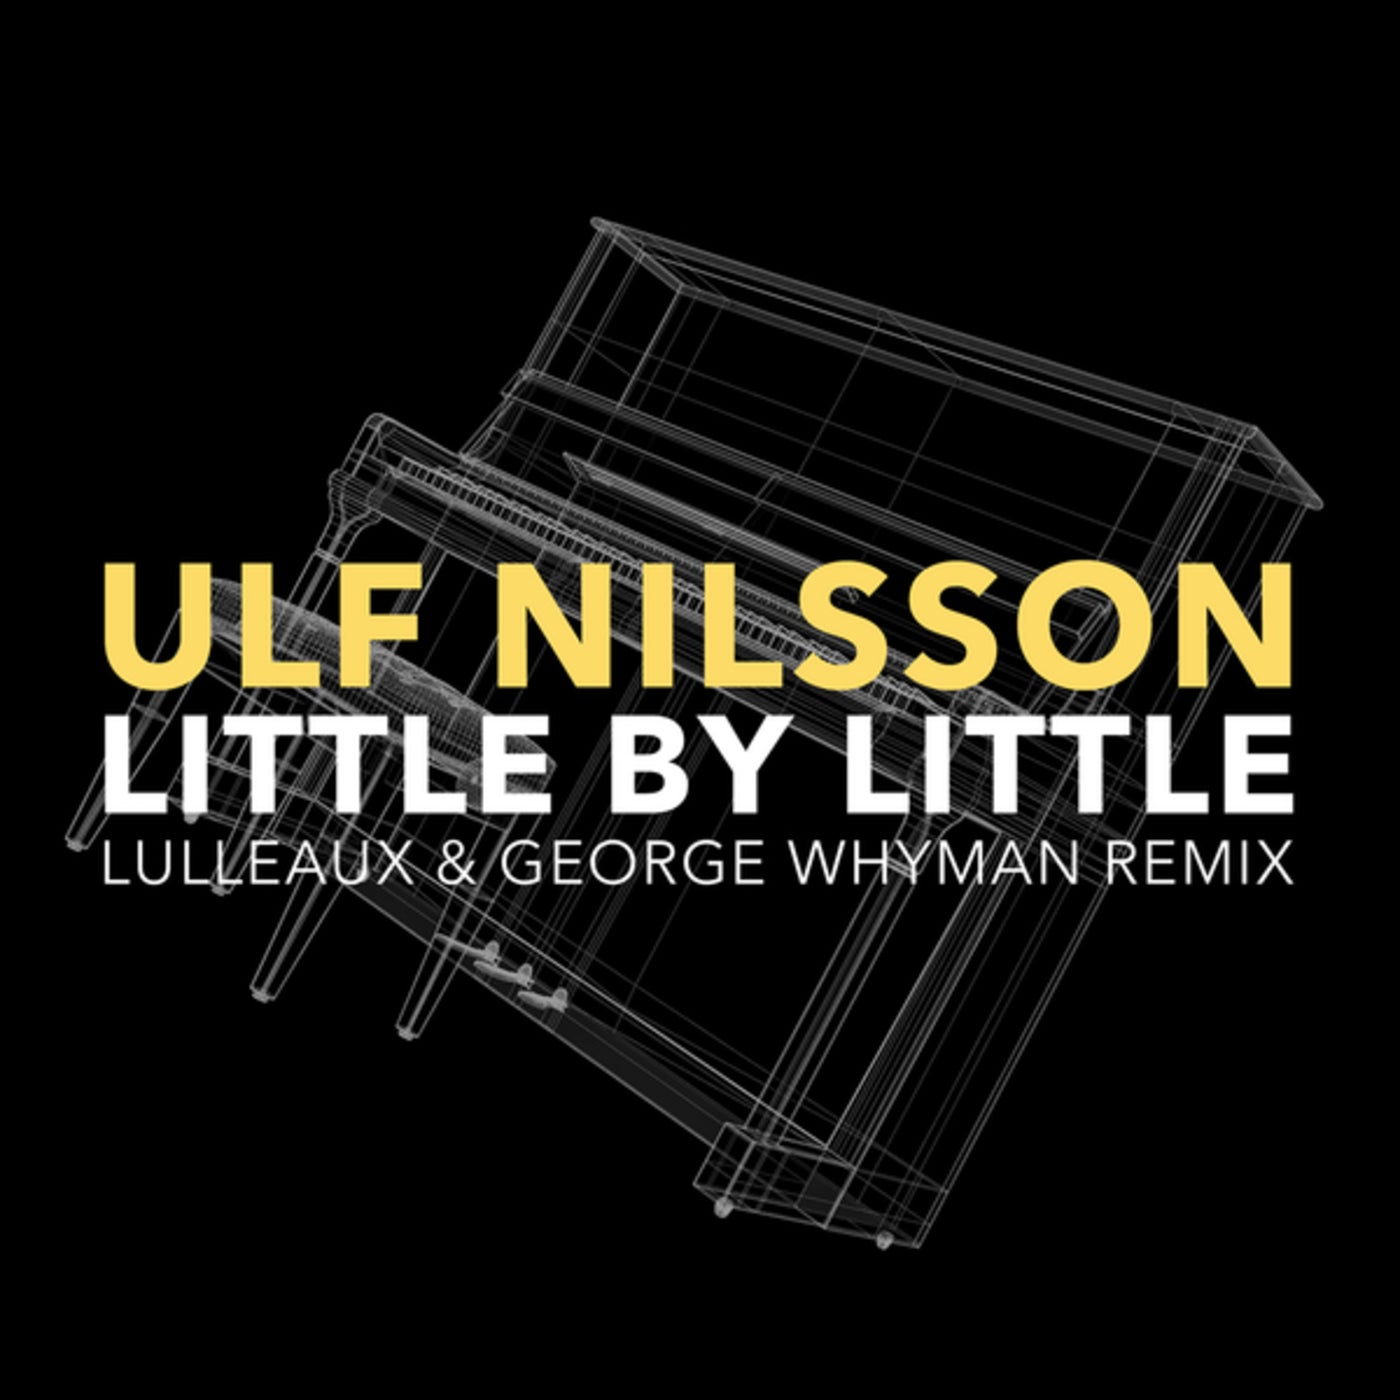 Little by little lulleaux george whyman remix long e mu emulator ii